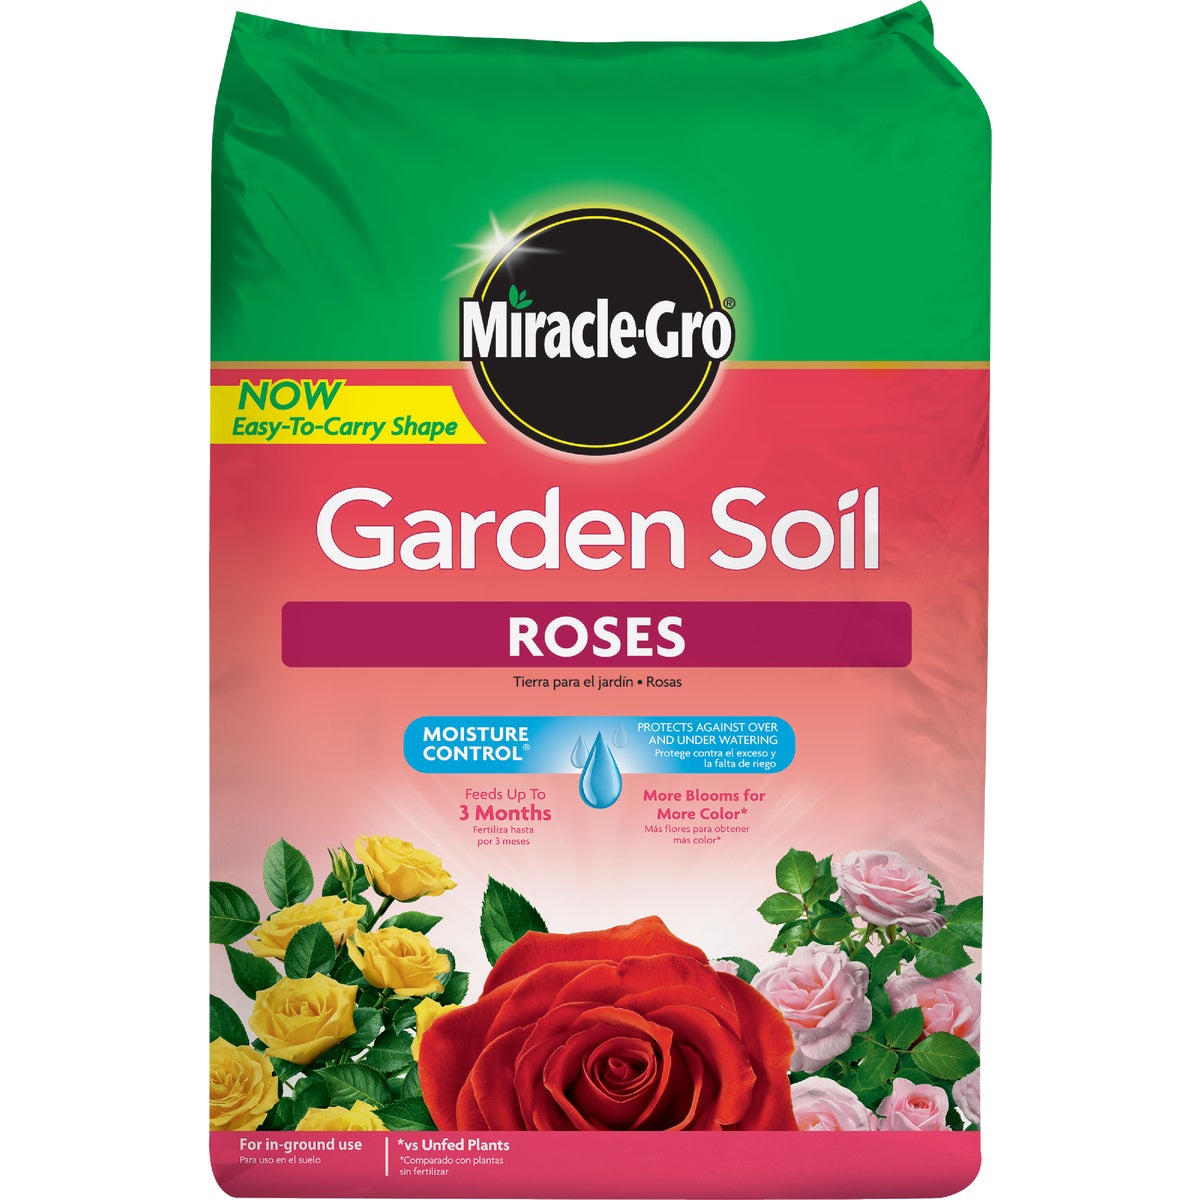 Item 704435, Miracle-Gro garden soil for roses.